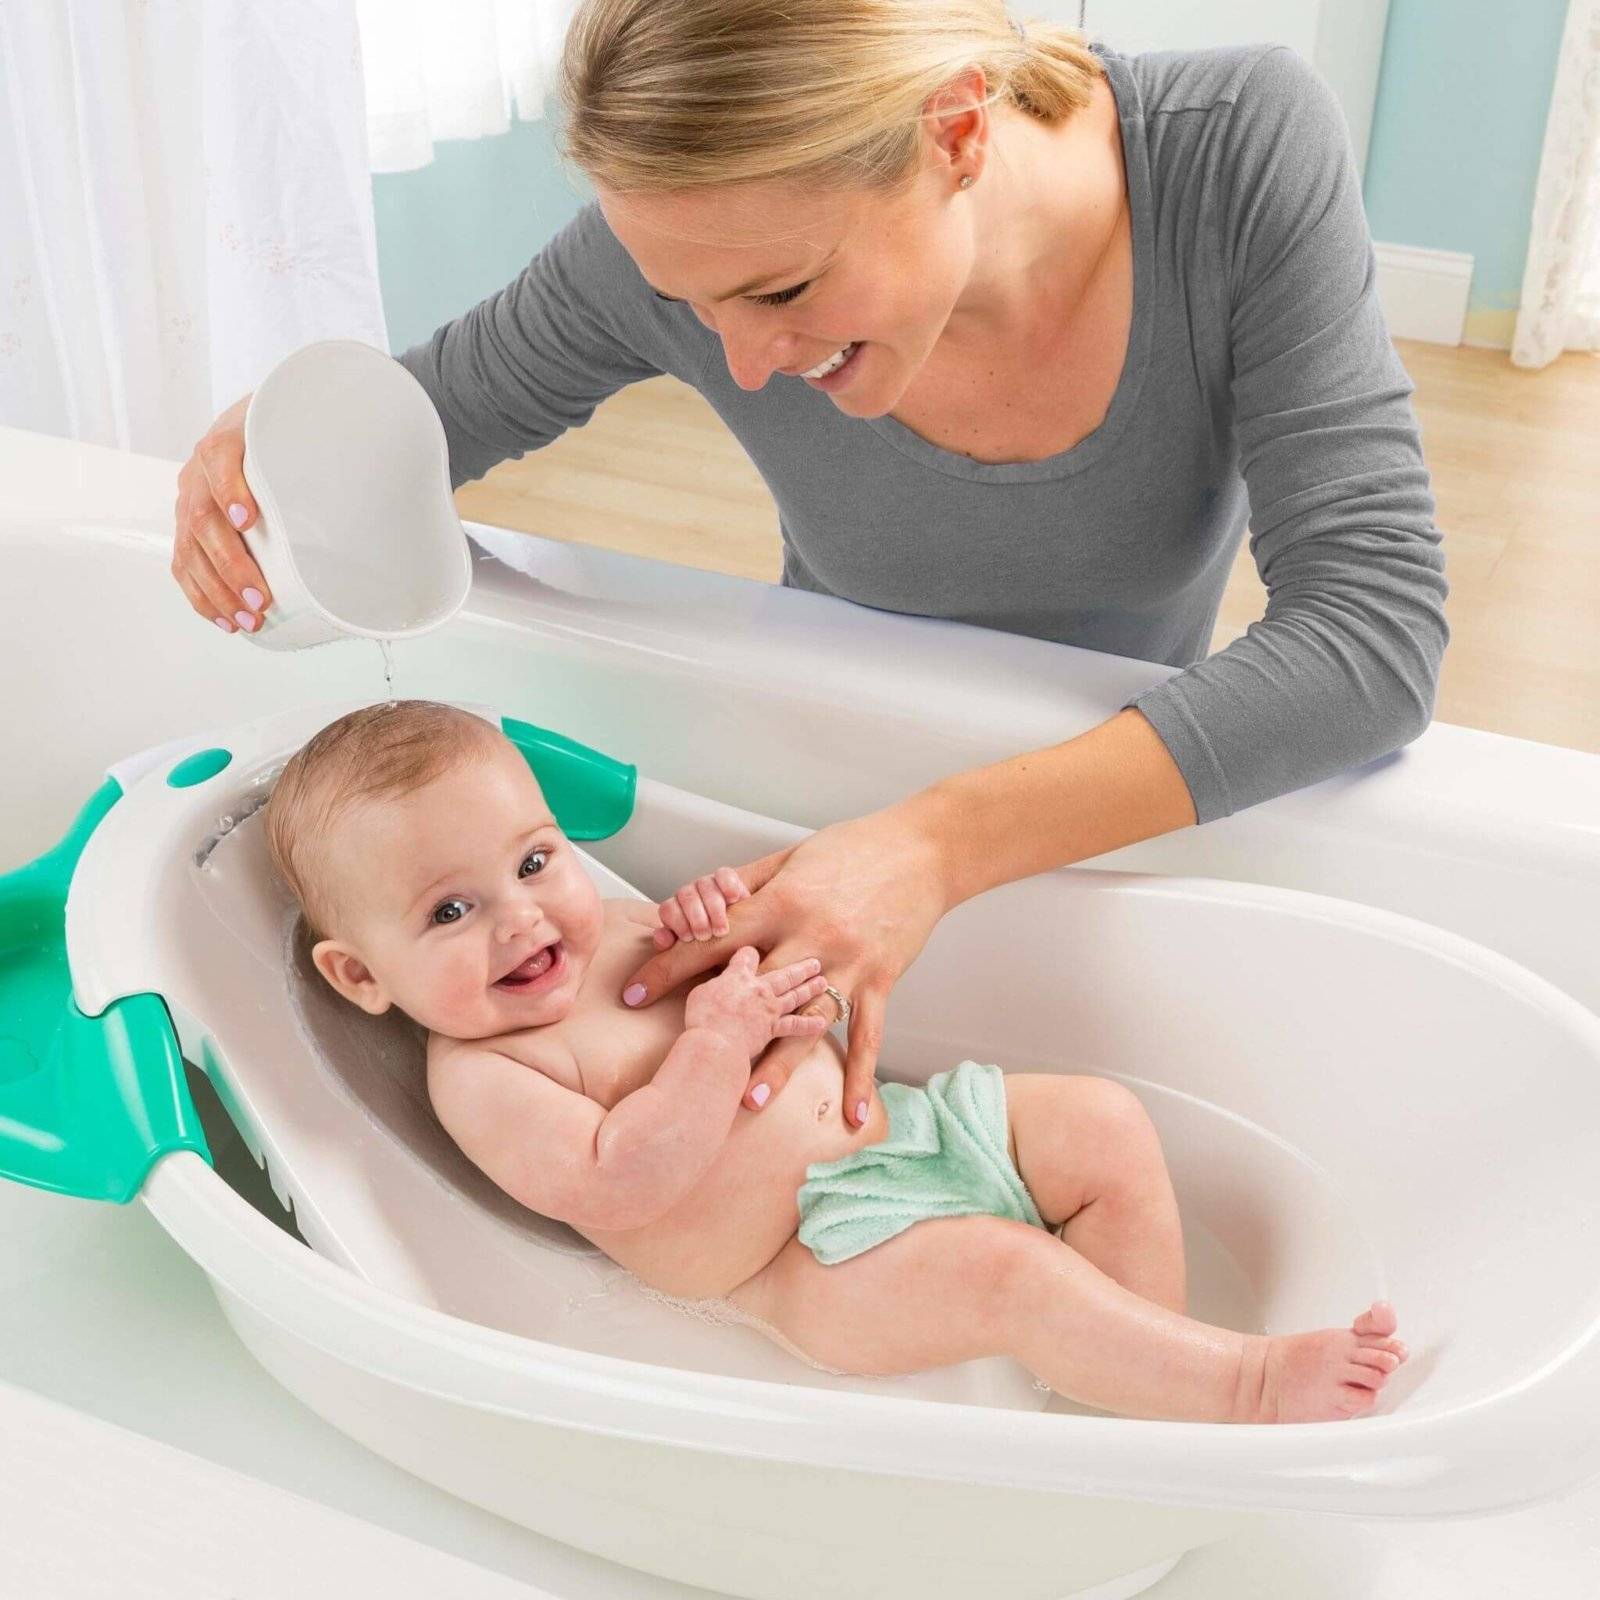 Какую ванночку выбрать для купания новорожденного ребенка: обзор анатомической, складной модели и других вариантов